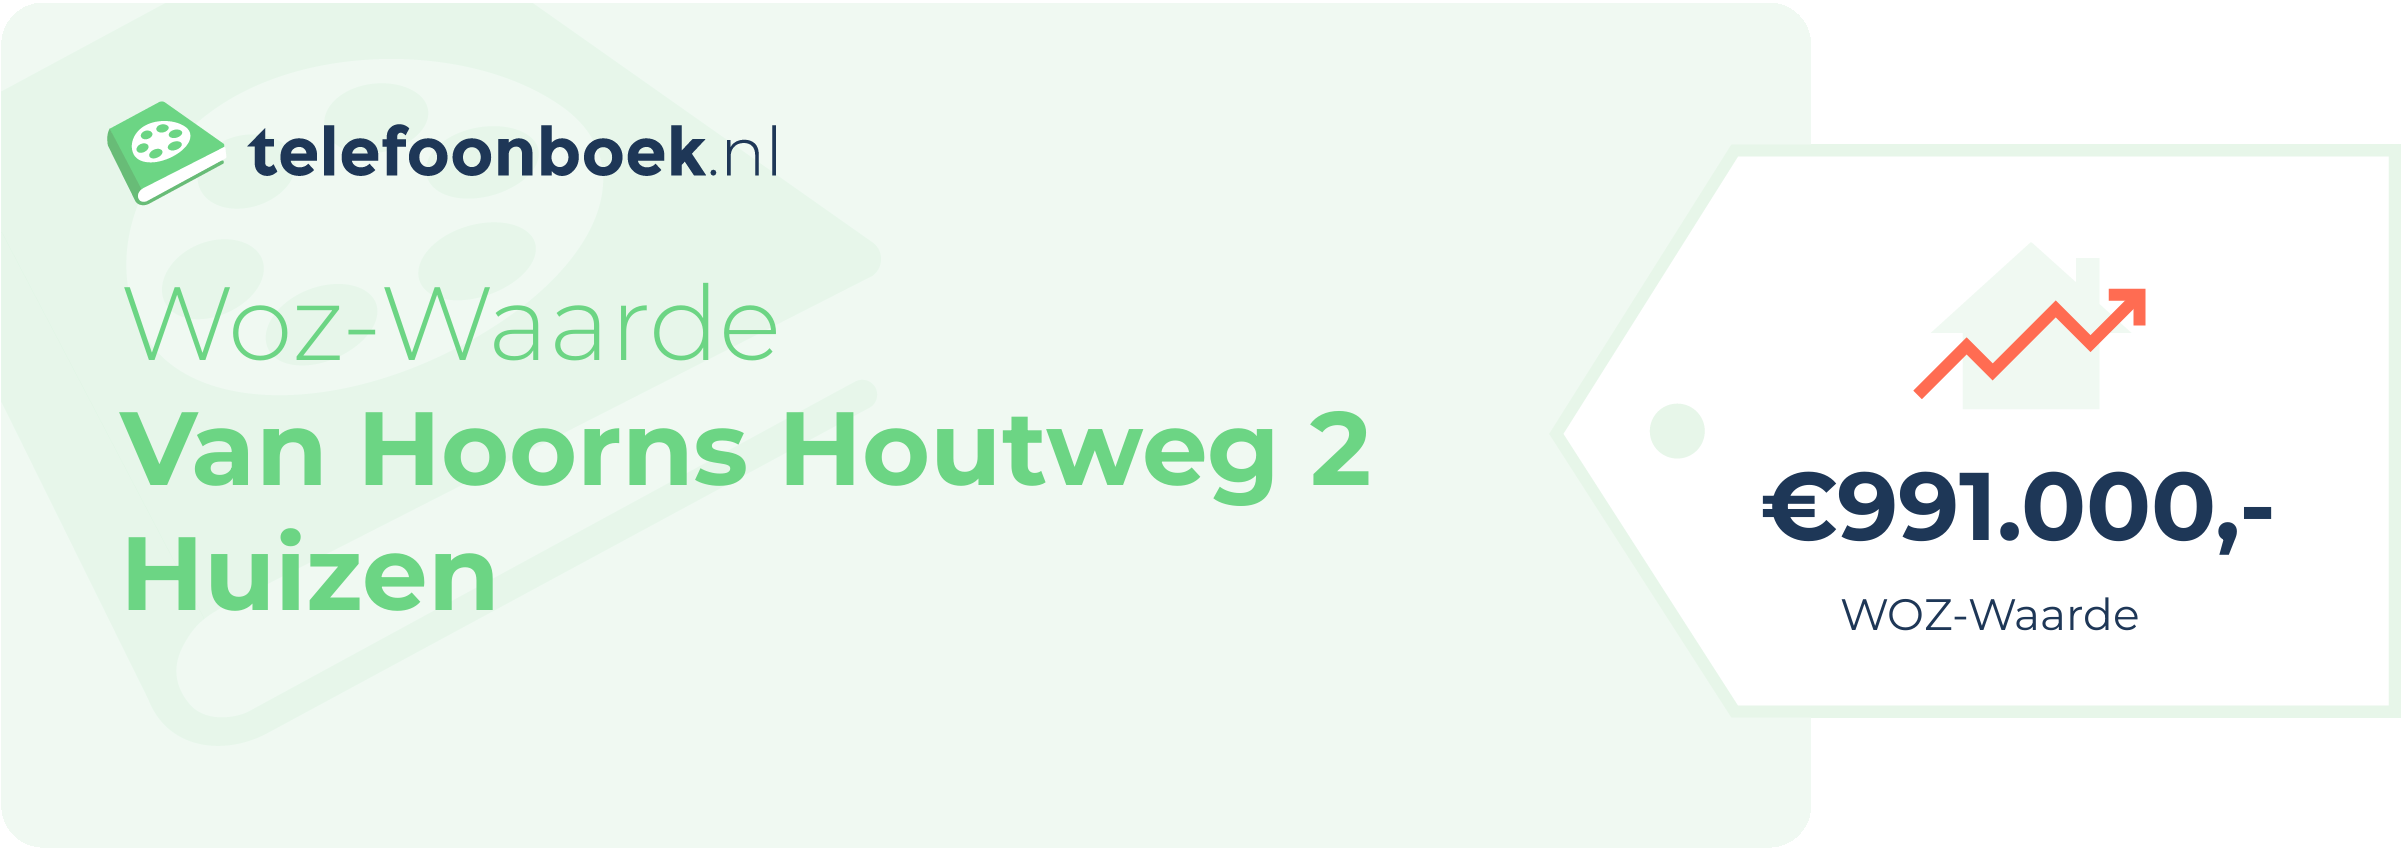 WOZ-waarde Van Hoorns Houtweg 2 Huizen